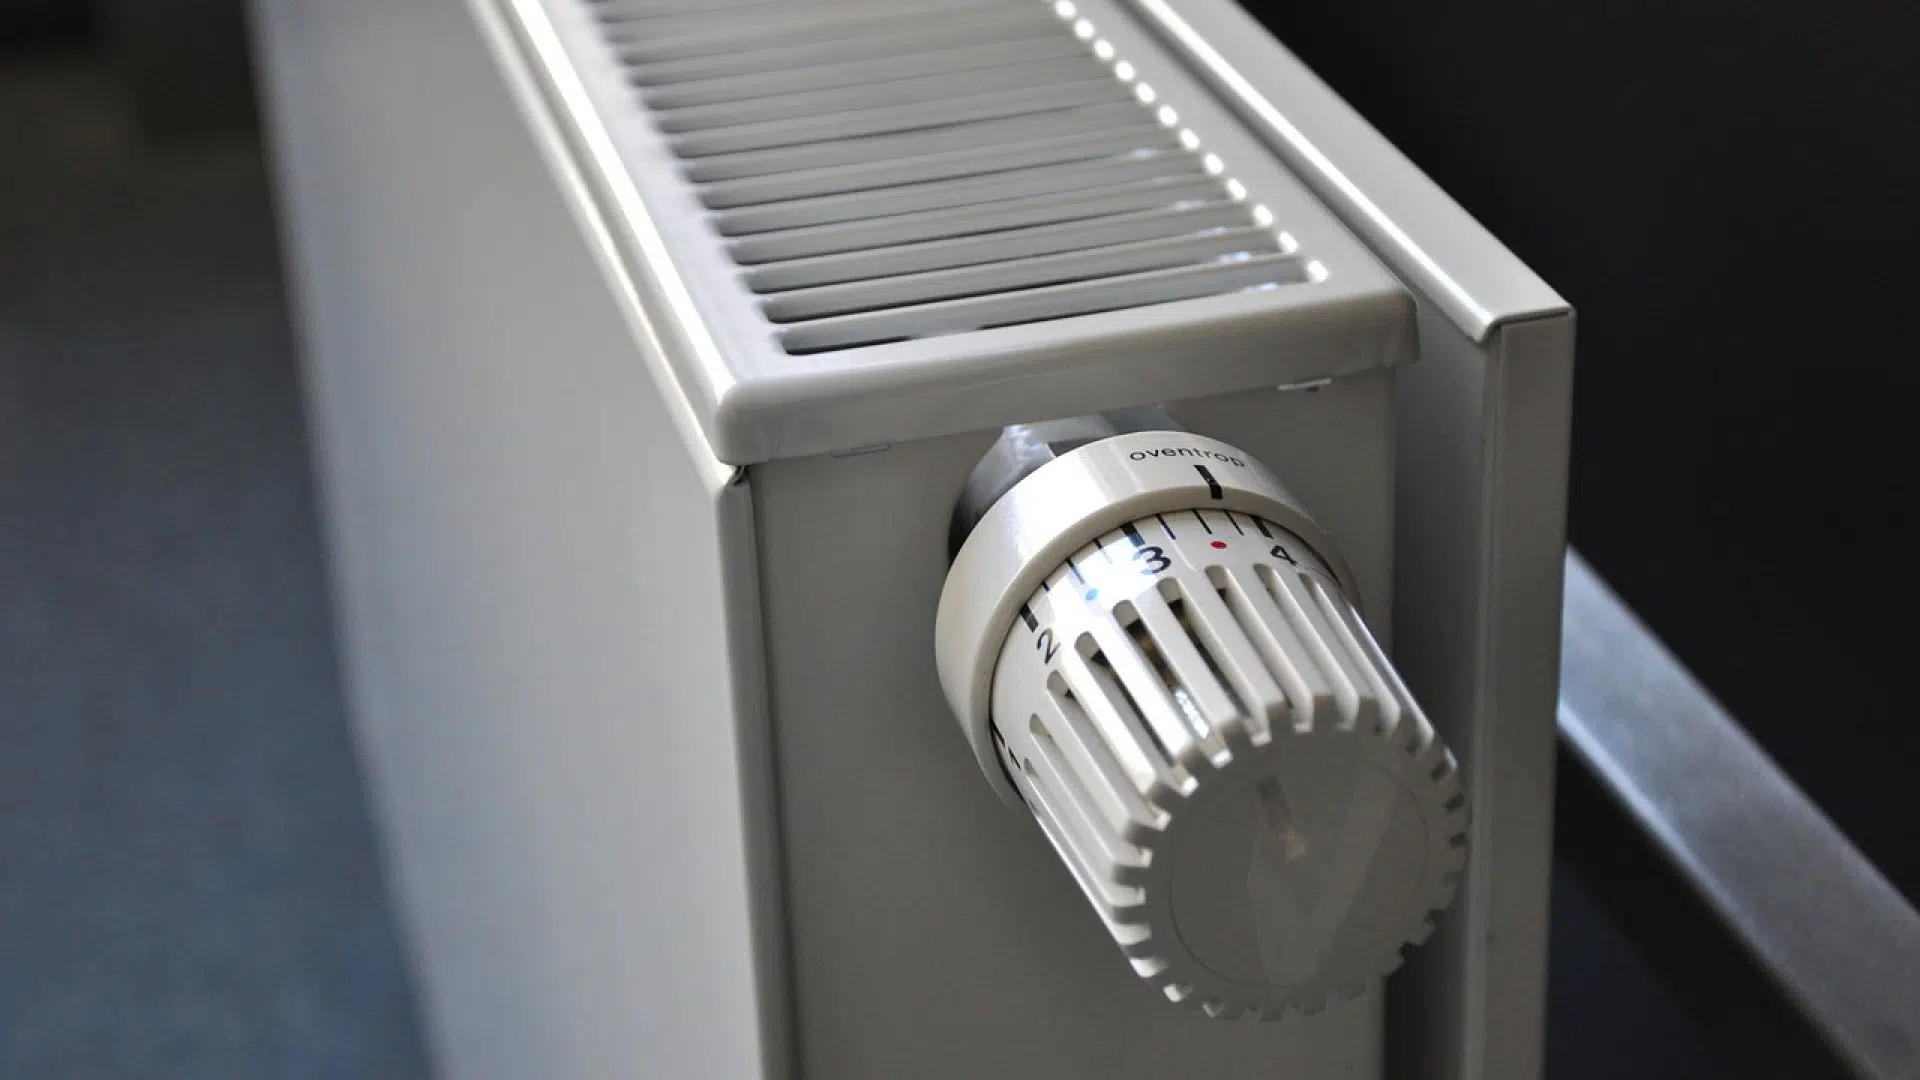 Changez votre vieille chaudière pour une chaudière à condensation sans vous ruiner